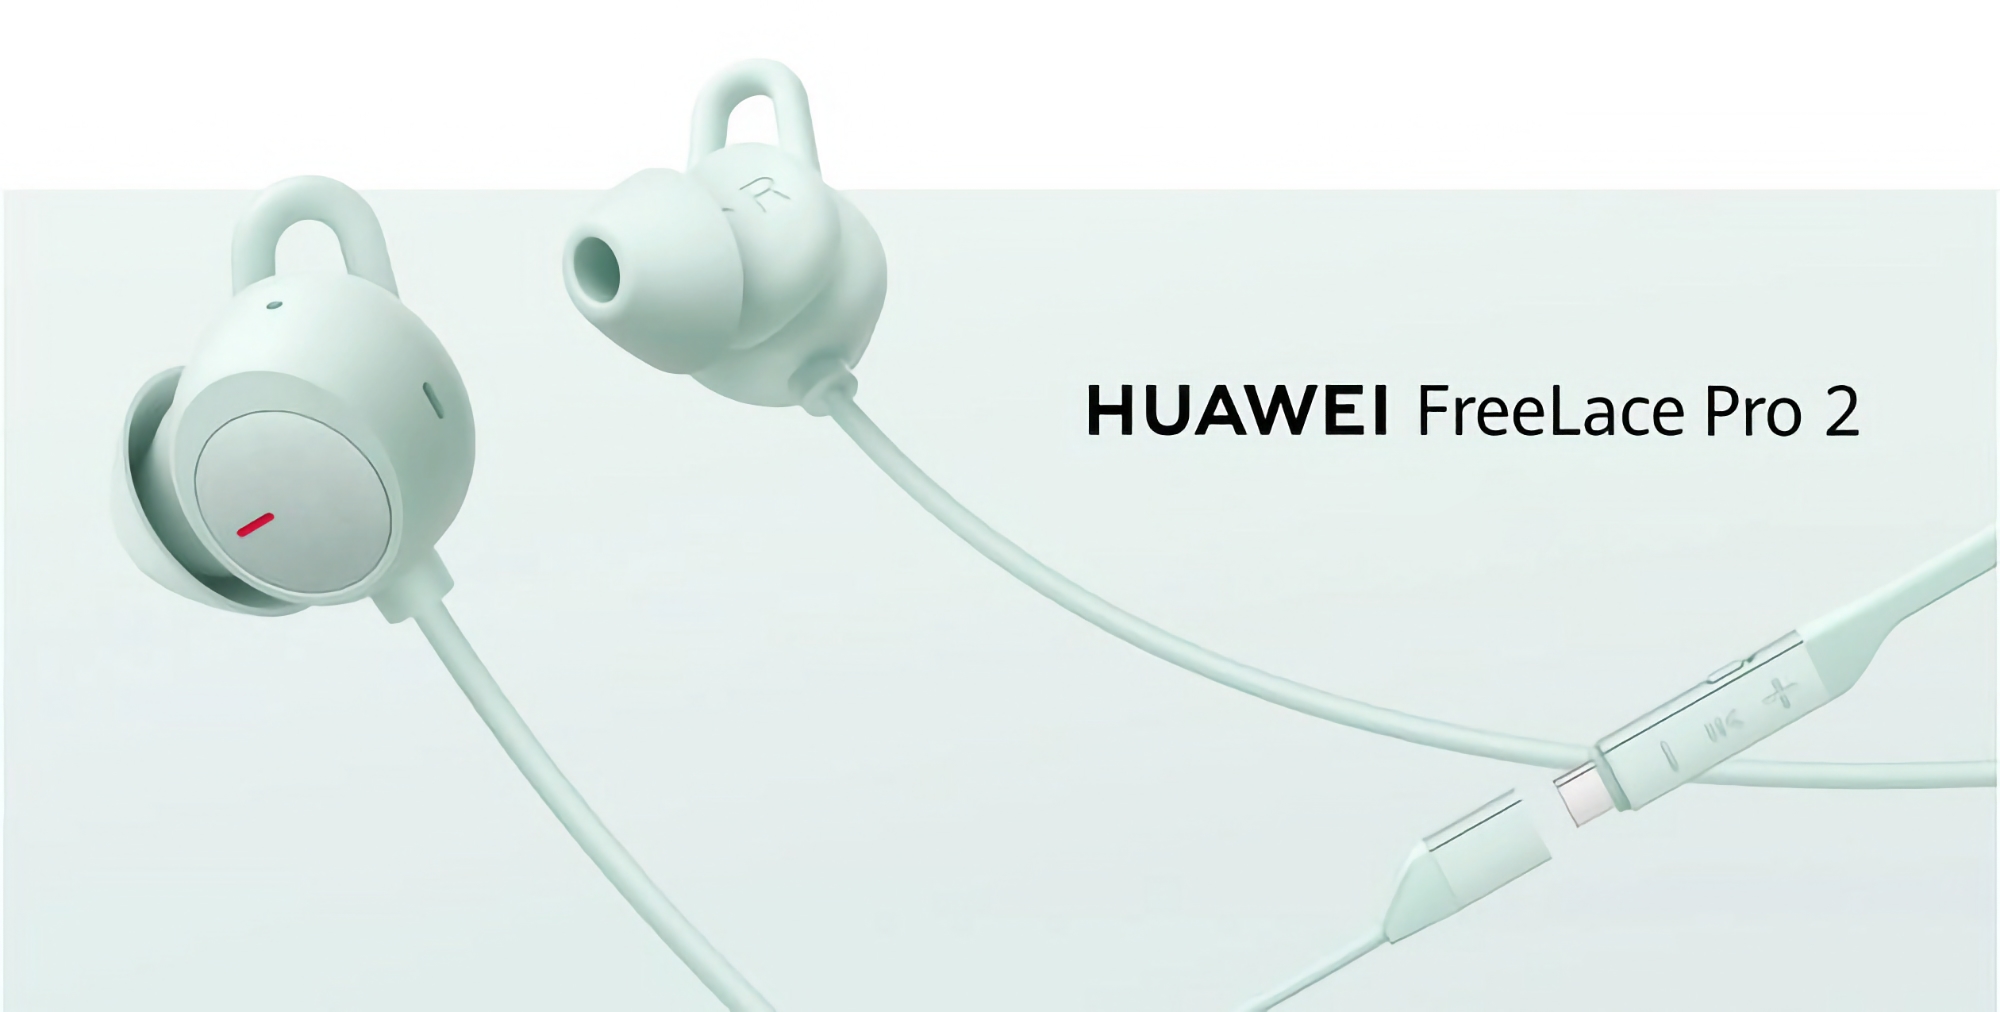 Huawei har afsløret pris og lanceringsdato for de trådløse FreeLace Pro 2-hovedtelefoner